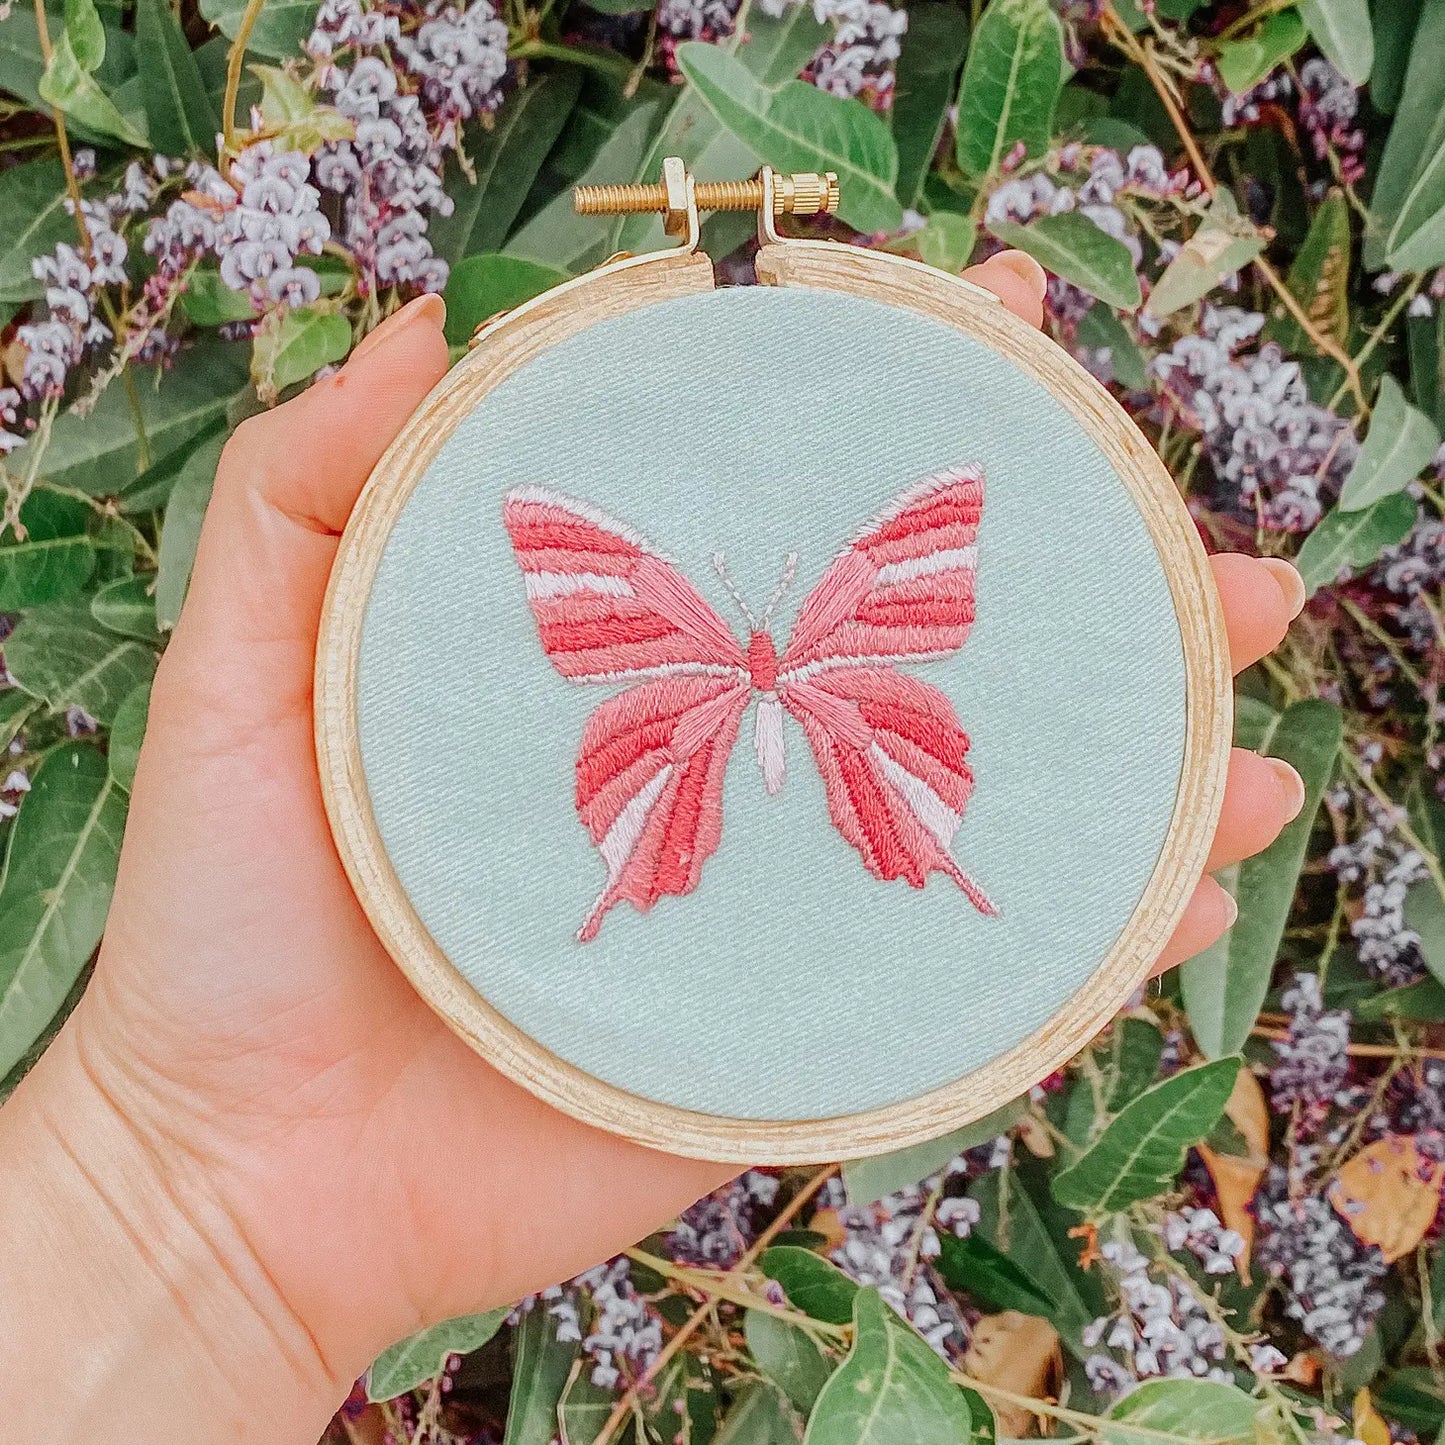 Alitas de Amor Beginner Embroidery Kit